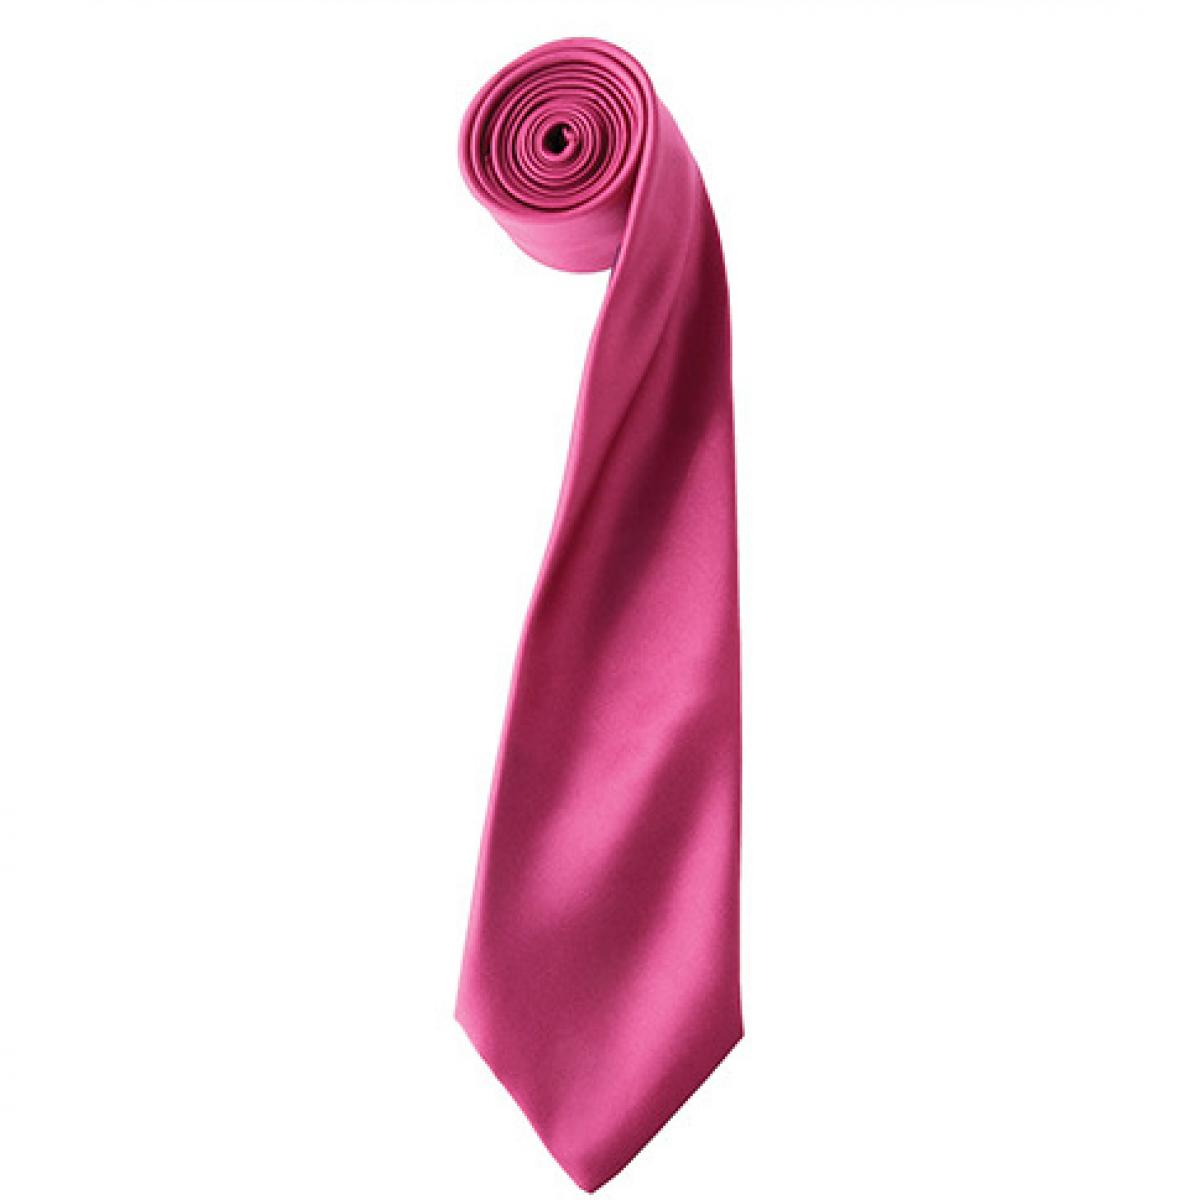 Hersteller: Premier Workwear Herstellernummer: PR750 Artikelbezeichnung: Satin Tie ´Colours´ / 144 x 8,5 cm Farbe: Hot Pink (ca. Pantone 214c)